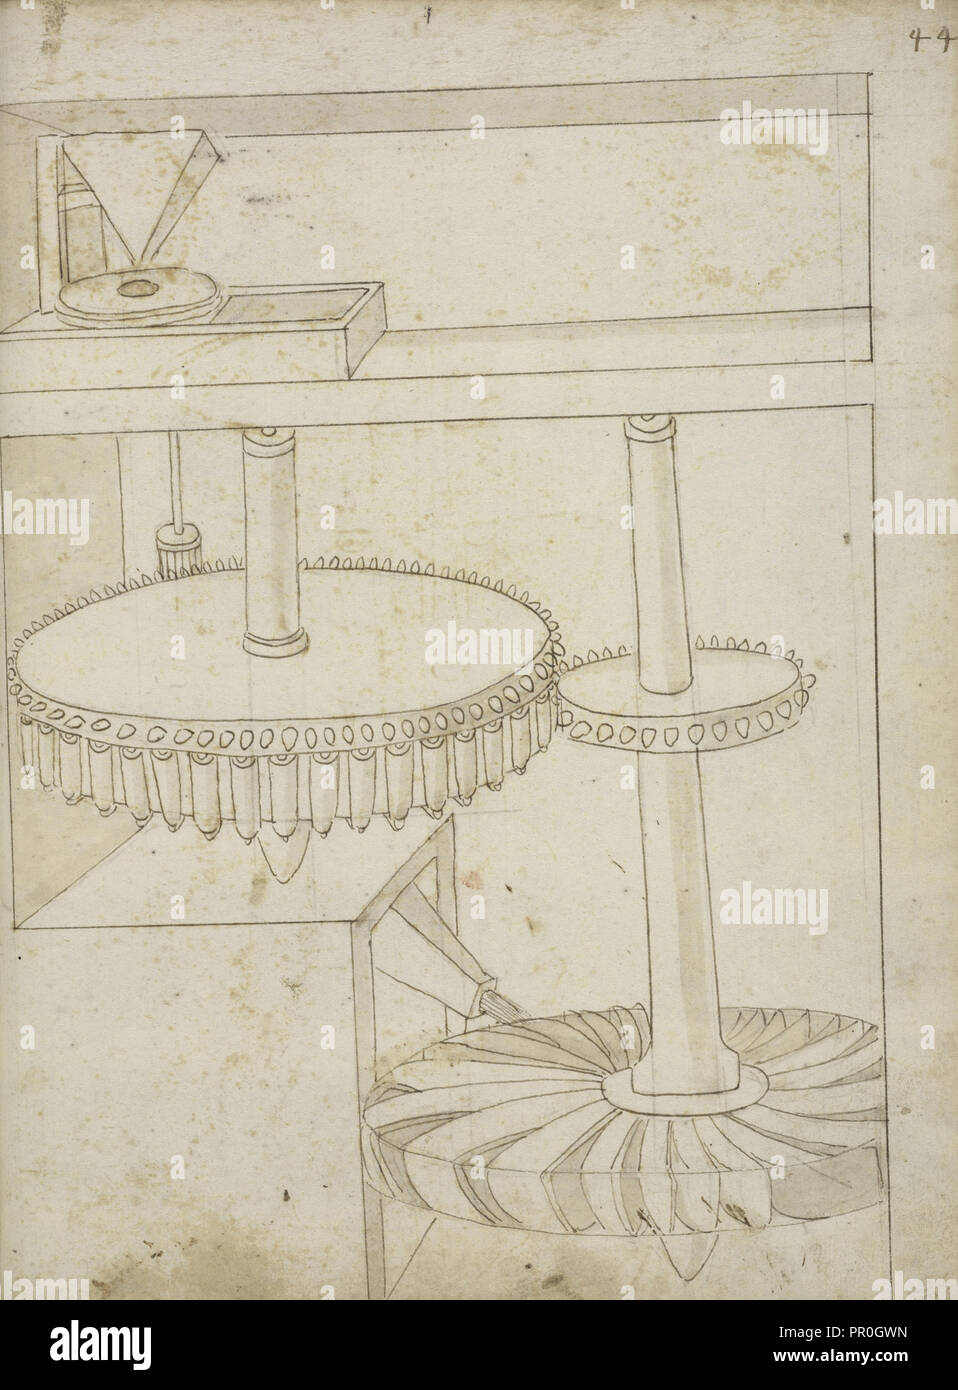 Folio 44 Mühle durch horizontale Rad angetrieben, Edificij et Maschine MS, Martini, Francesco di Giorgio, 1439-1502, Braun Tinte und Waschen Stockfoto